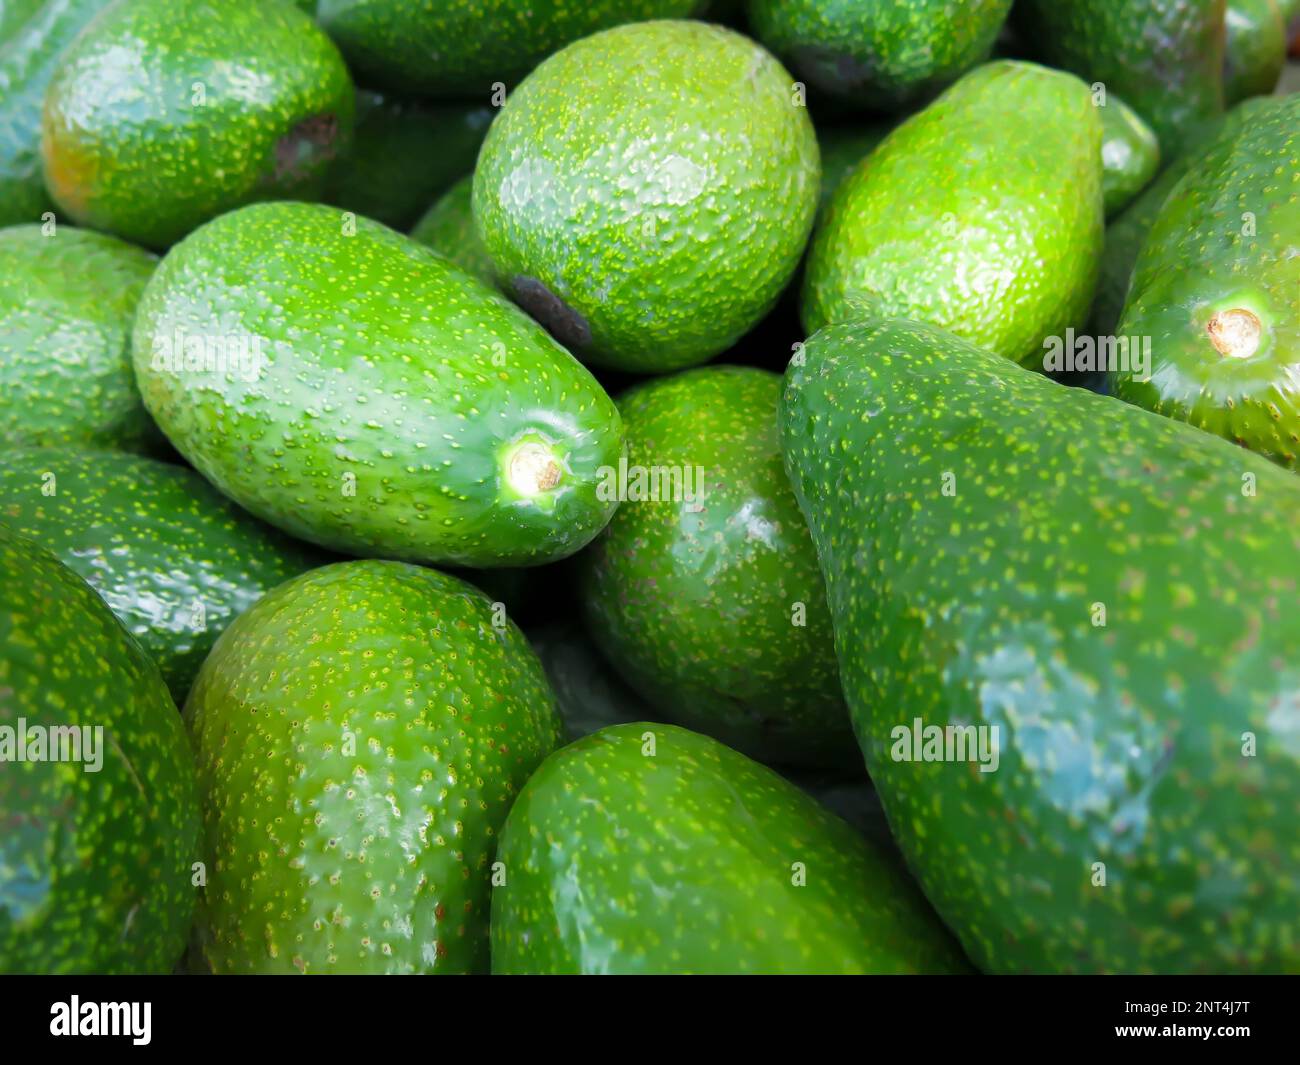 Avocados - Close Up Stock Photo